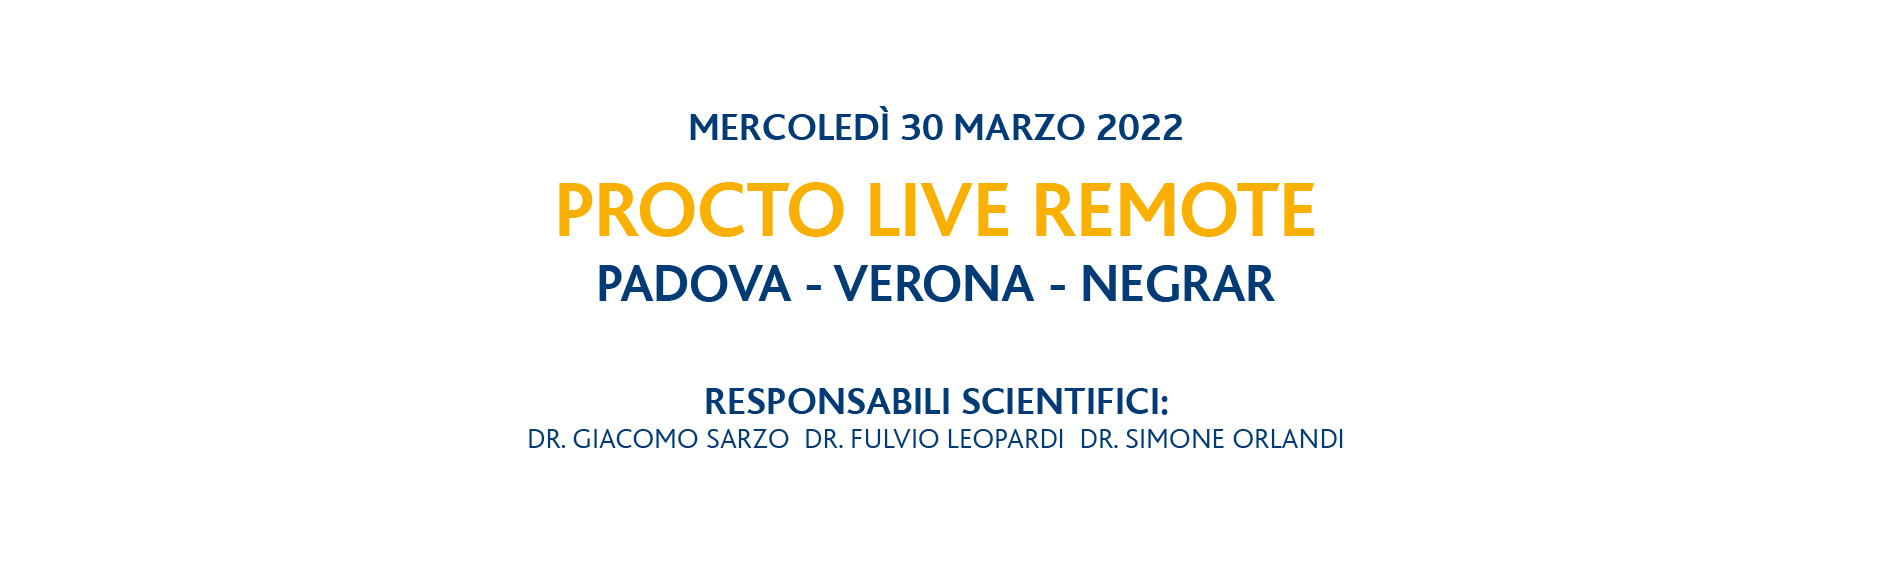 Congresso Procto Live Remote, 30 marzo 2022